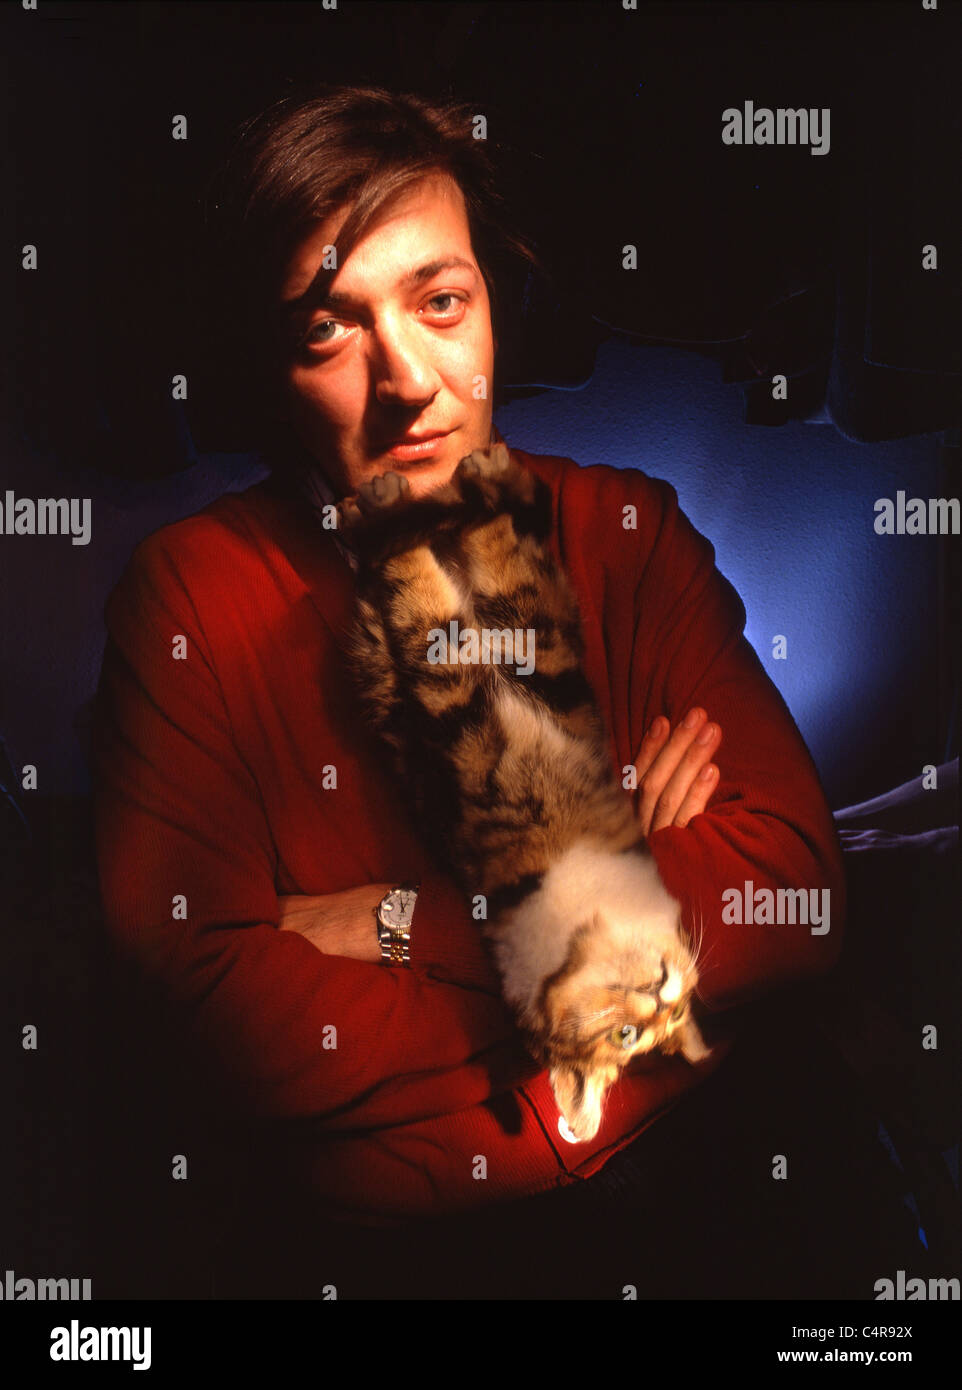 Ritratto di autore comico, emittente e celebrity Stephen Fry con gatto ripiene Foto Stock